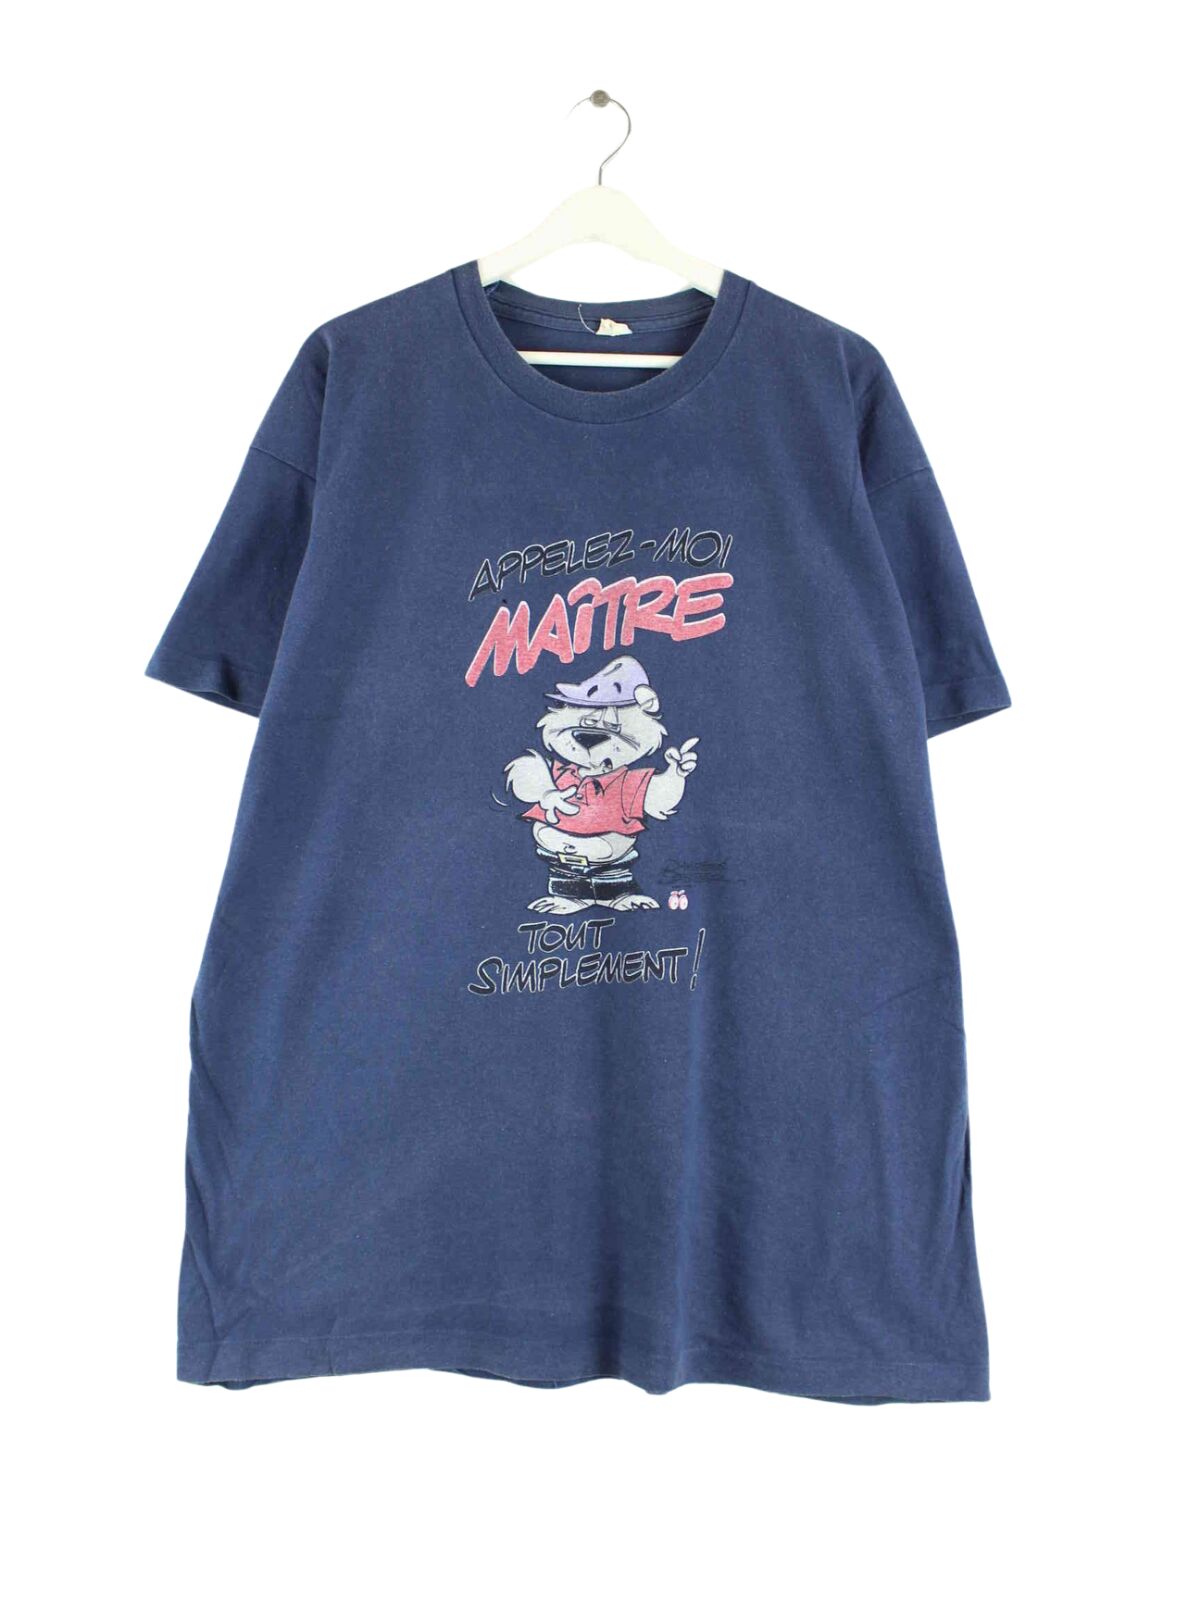 Vintage 90s Vintage Maitre Print T-Shirt Blau XL (front image)